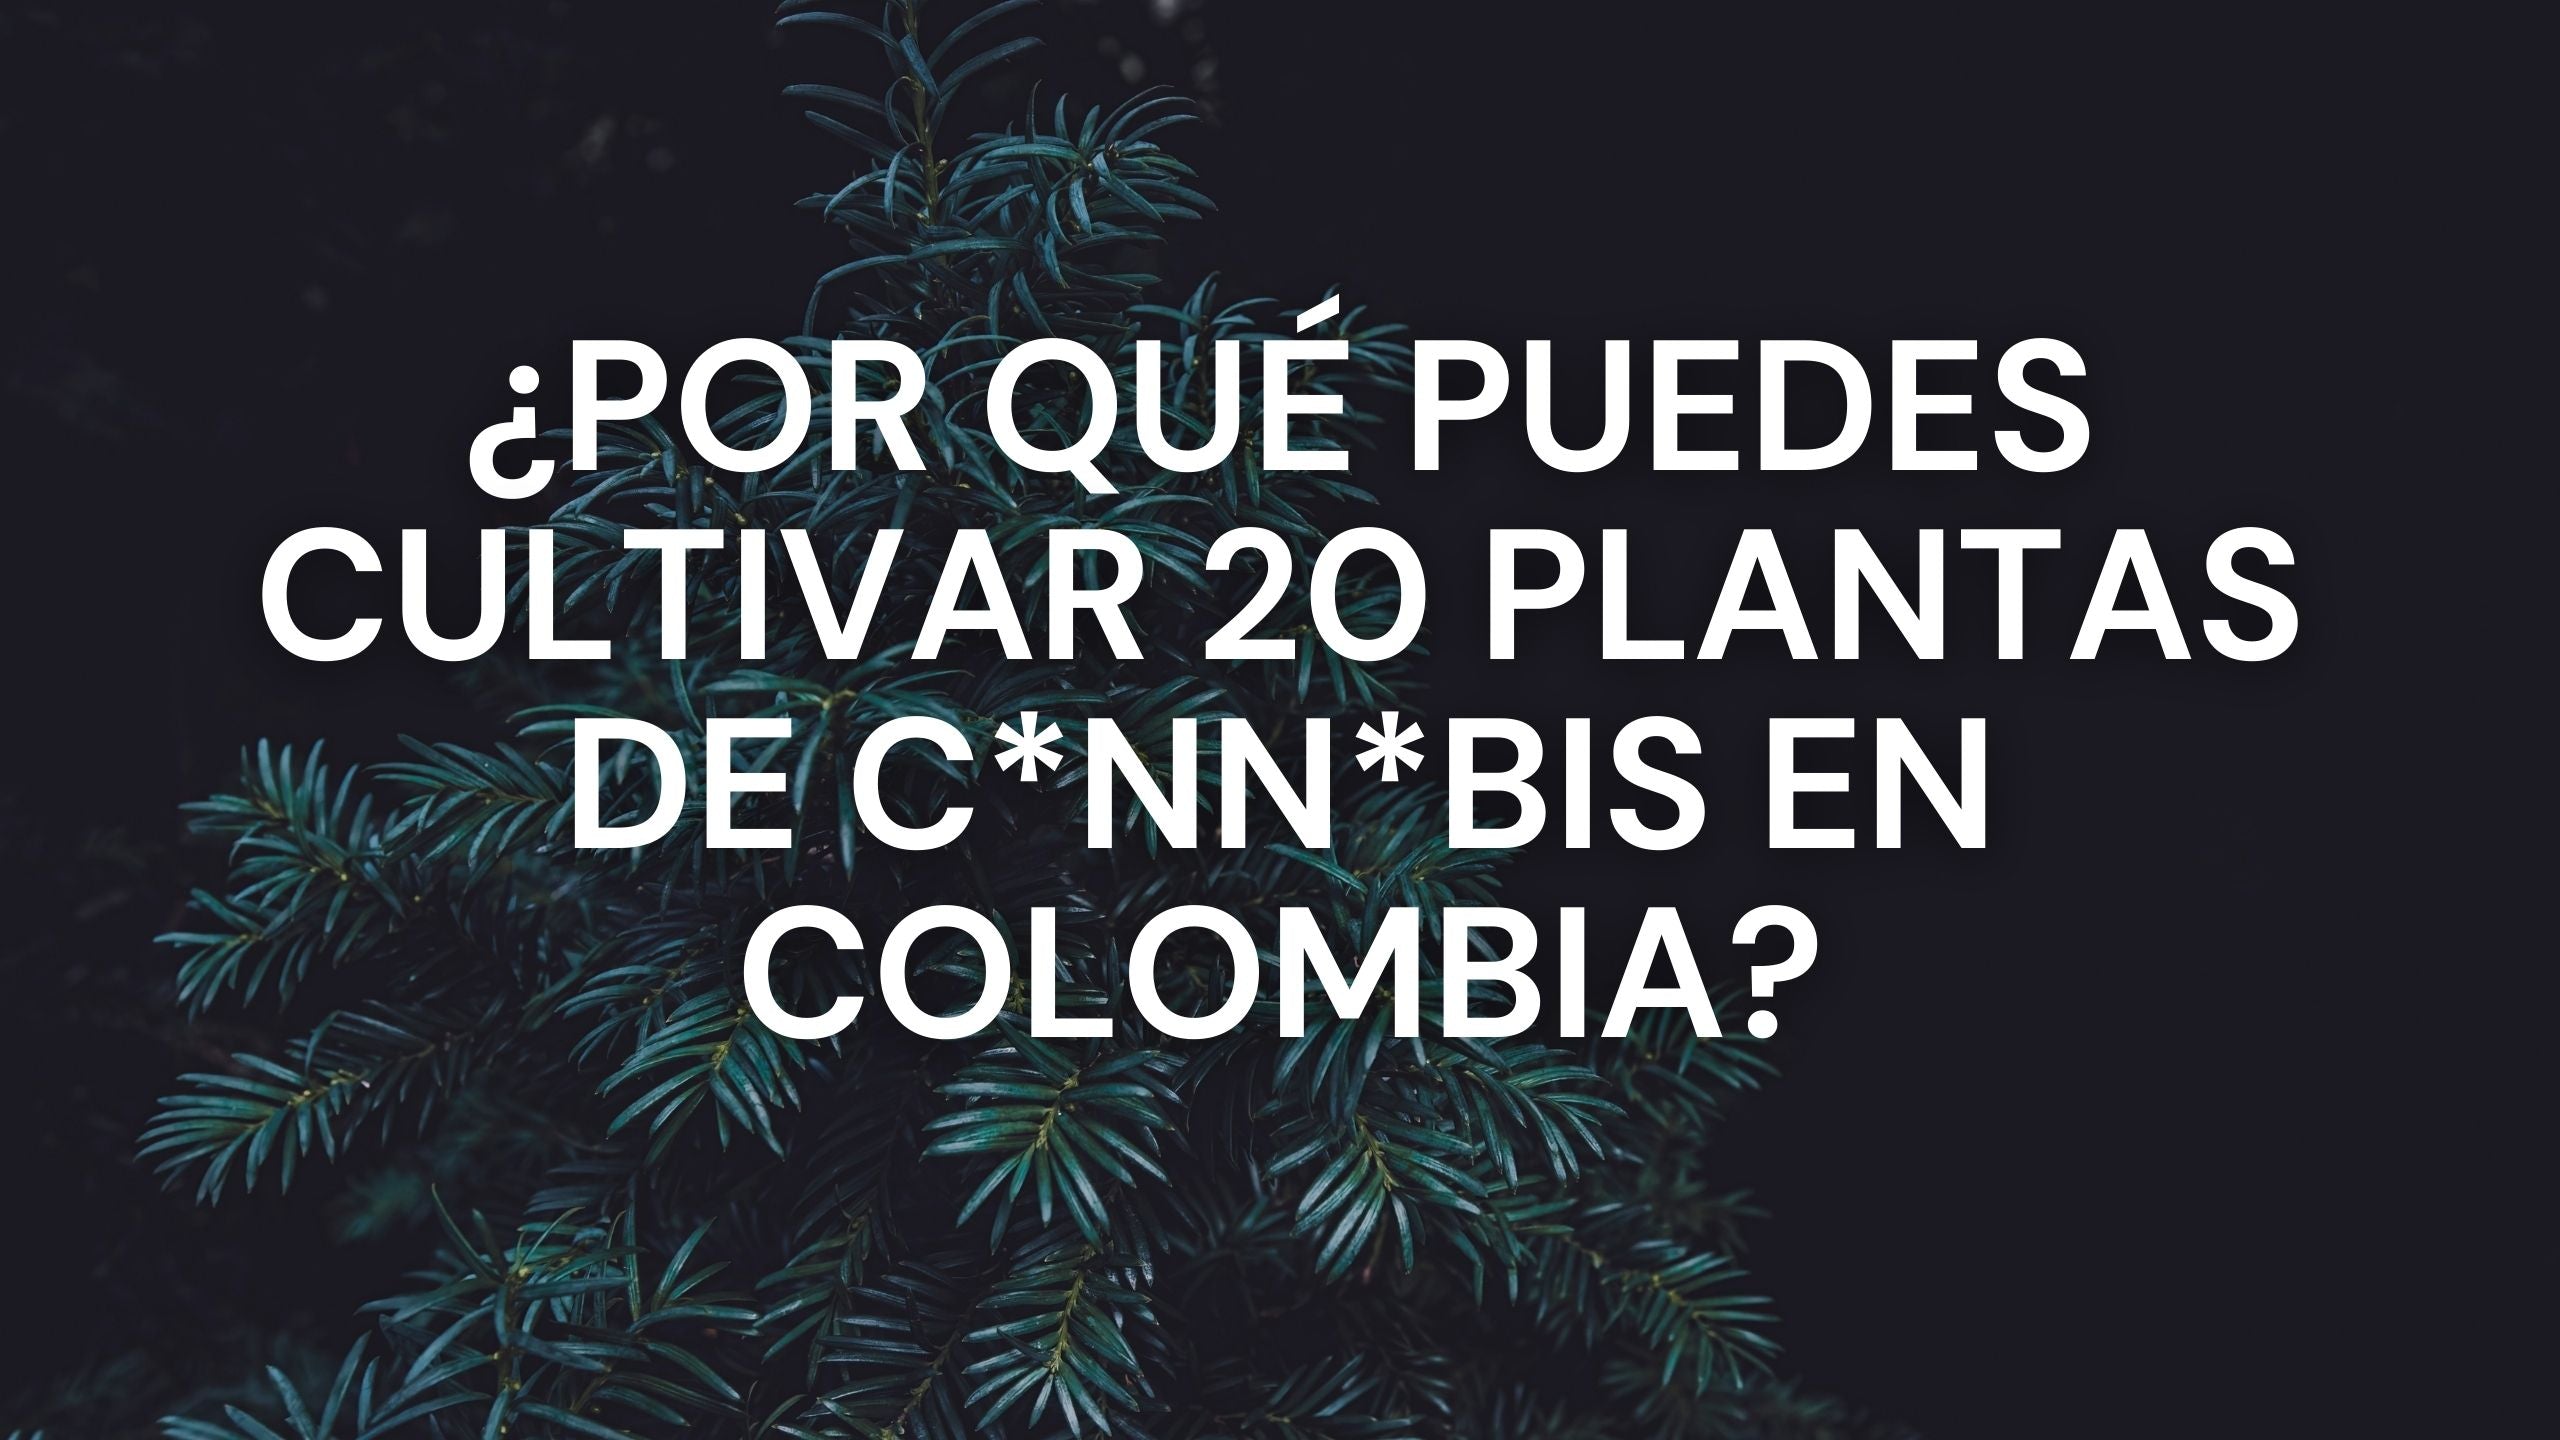 ¿Por qué puedes cultivar hasta 20 plantas de cannabis en Colombia?